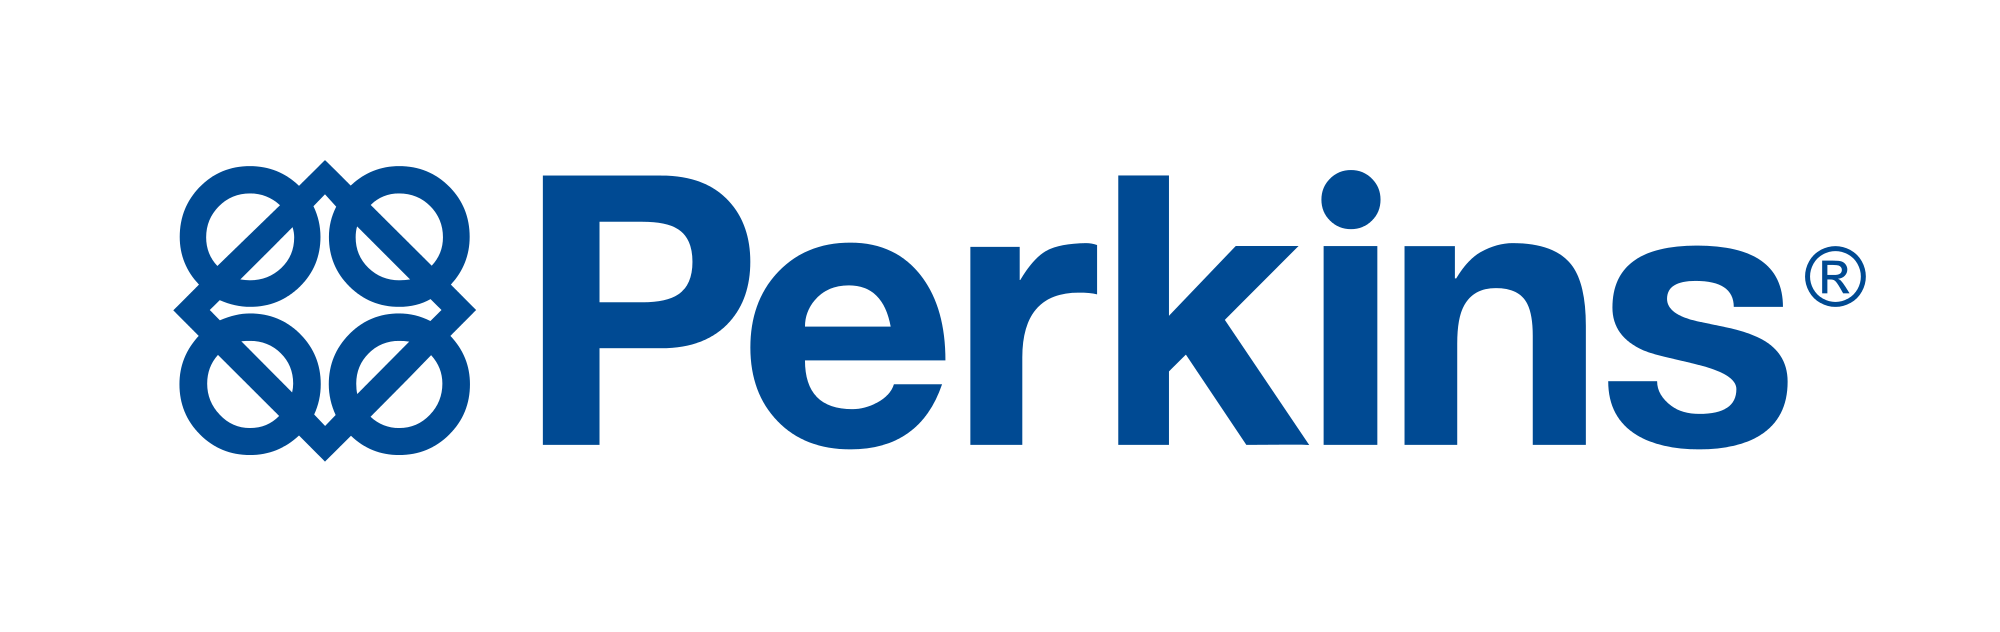 Perkins-Logo,پرکینز